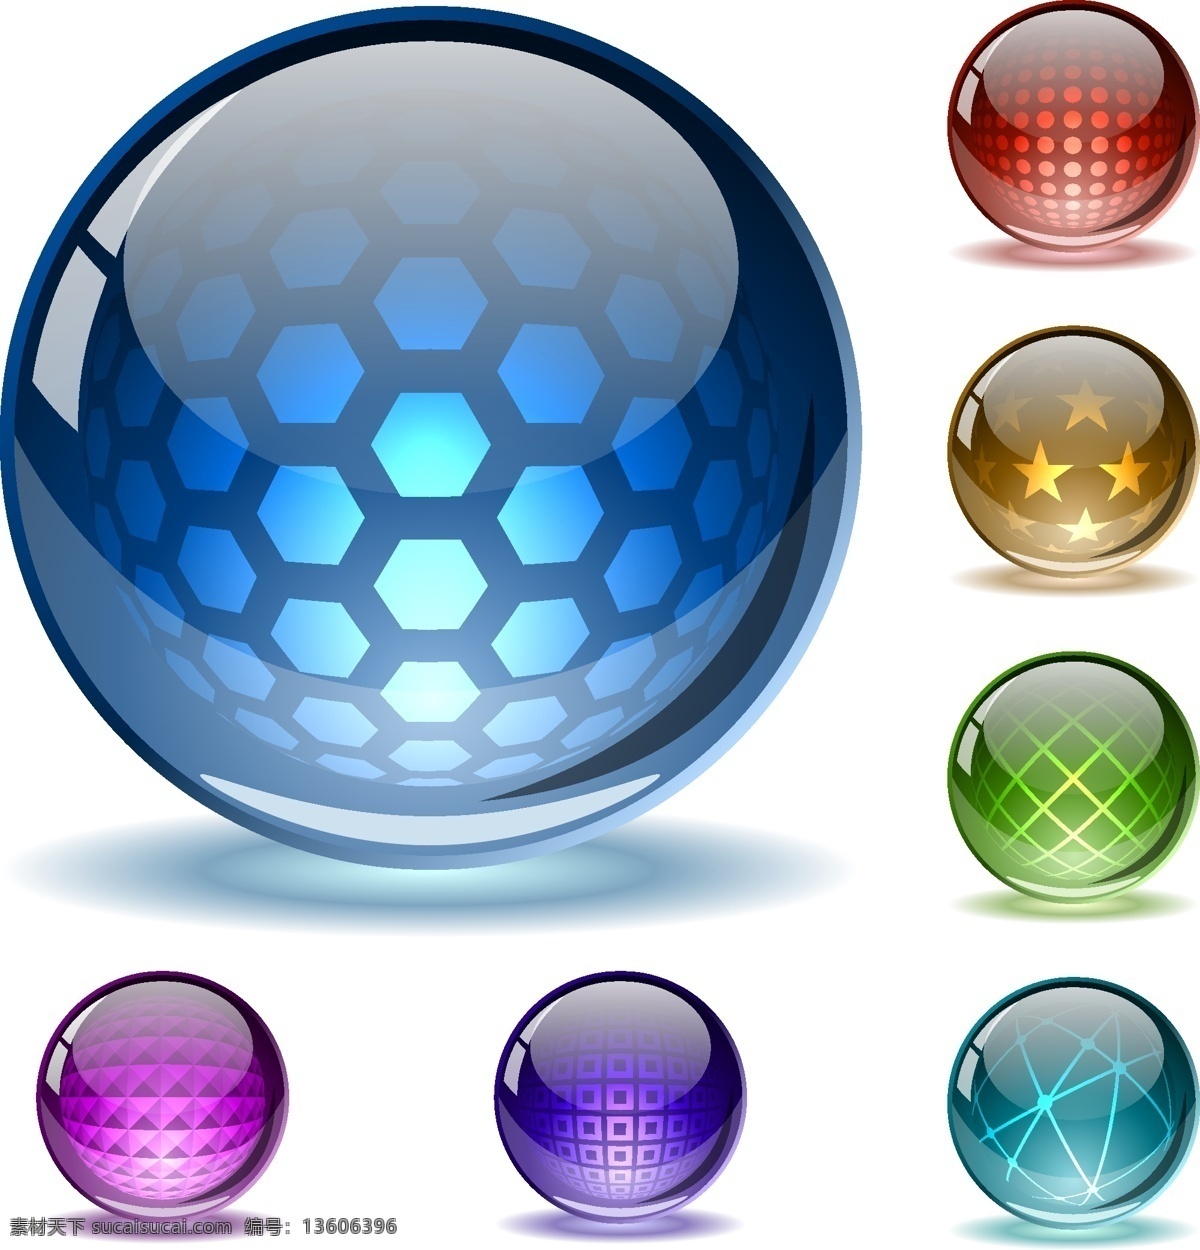 精美 质感 图标 玻璃球 高尔夫球 高光 高清 光芒 光球 幻彩 精致 球 足球 圆 魔法球 五彩 矢量素材 水晶球 矢量图 其他矢量图